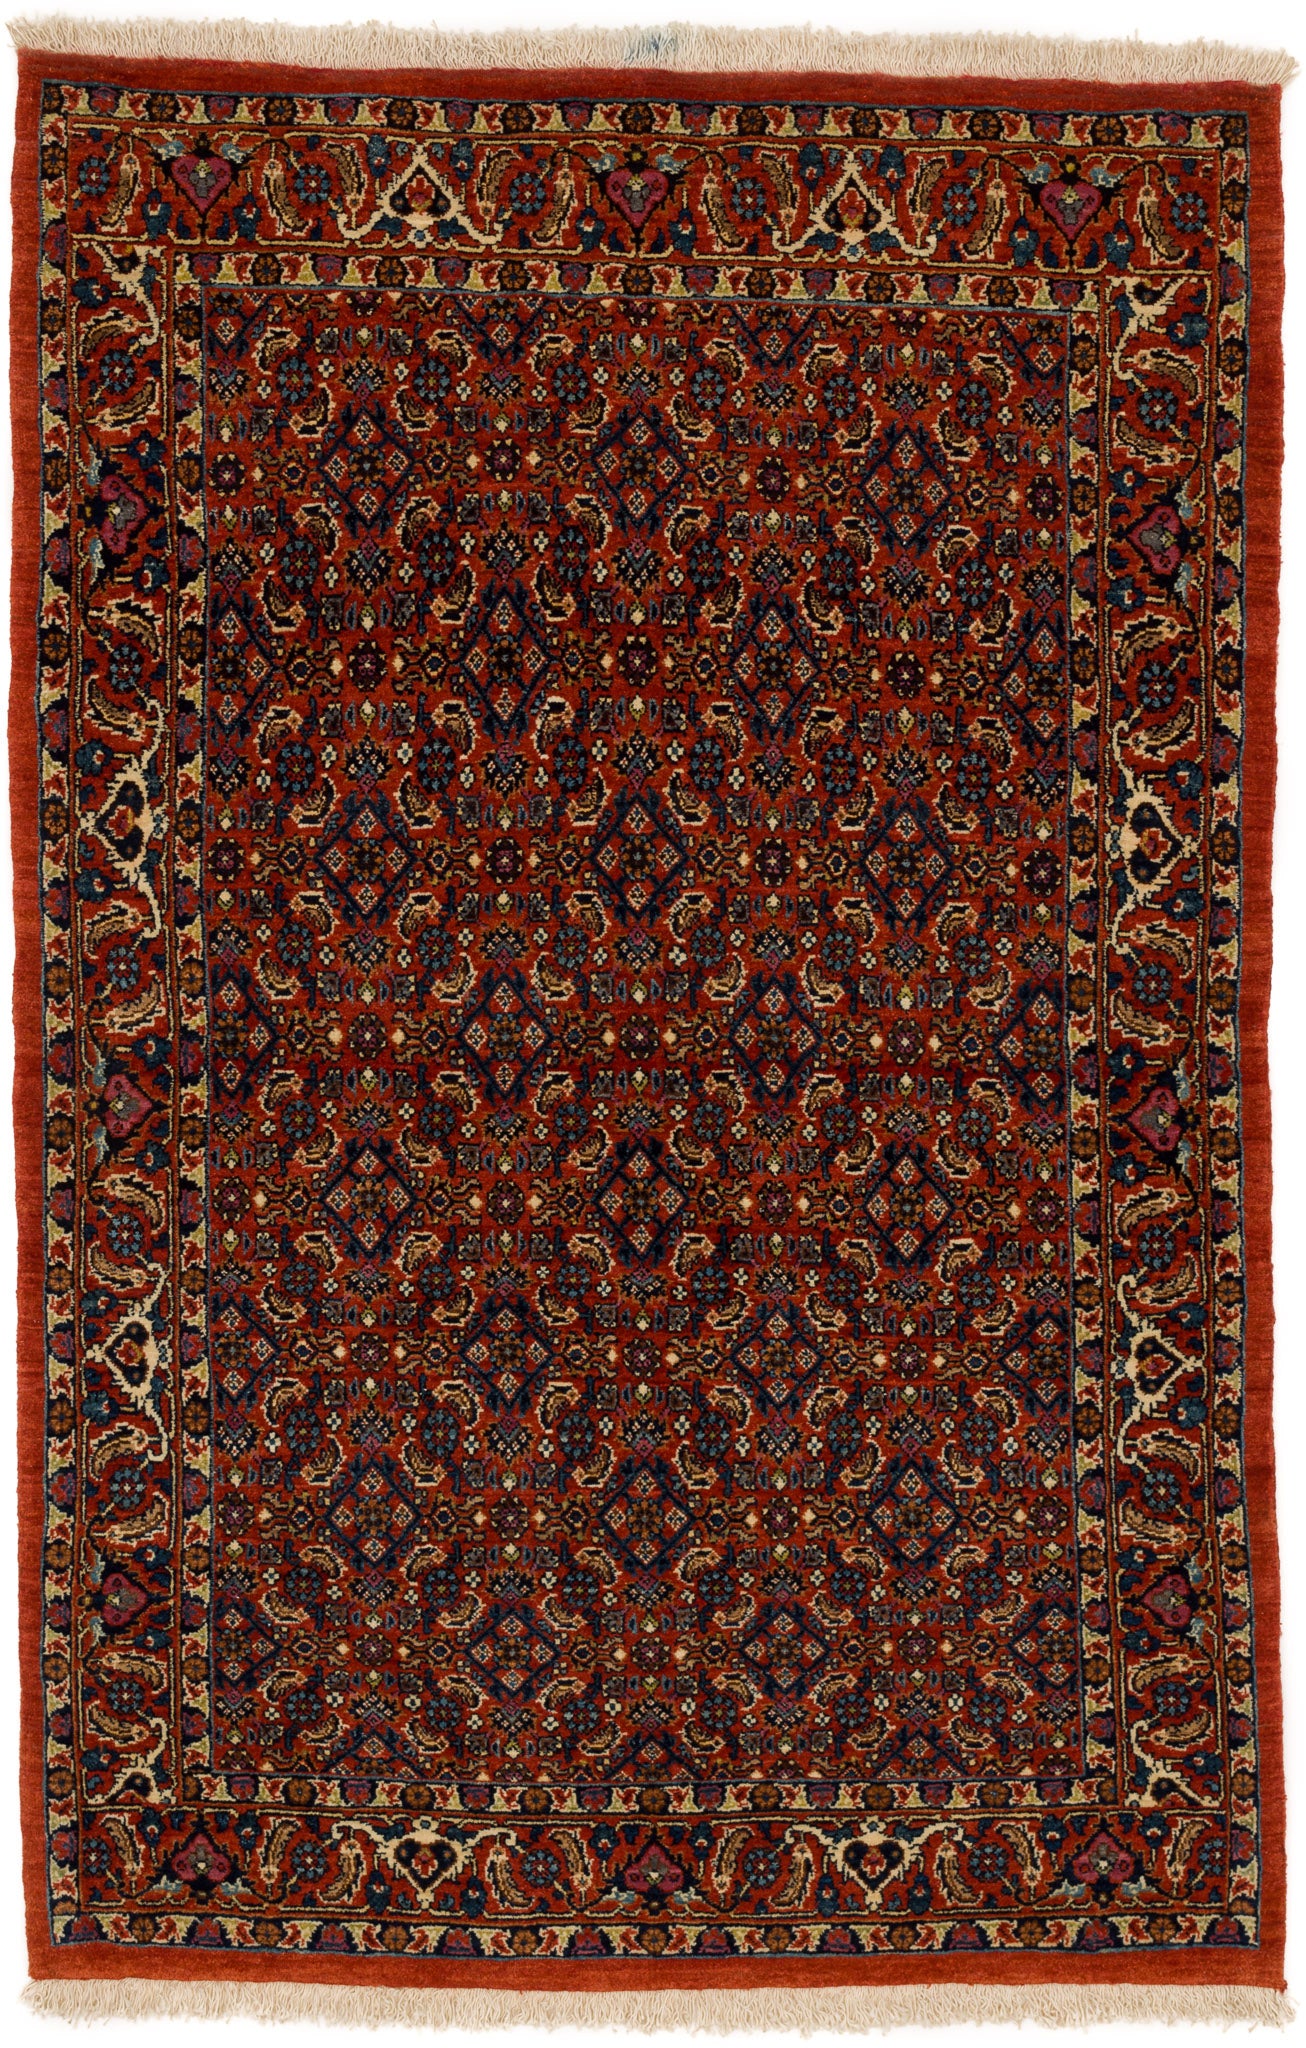 Bidjar Mirzai, 161 × 105 cm